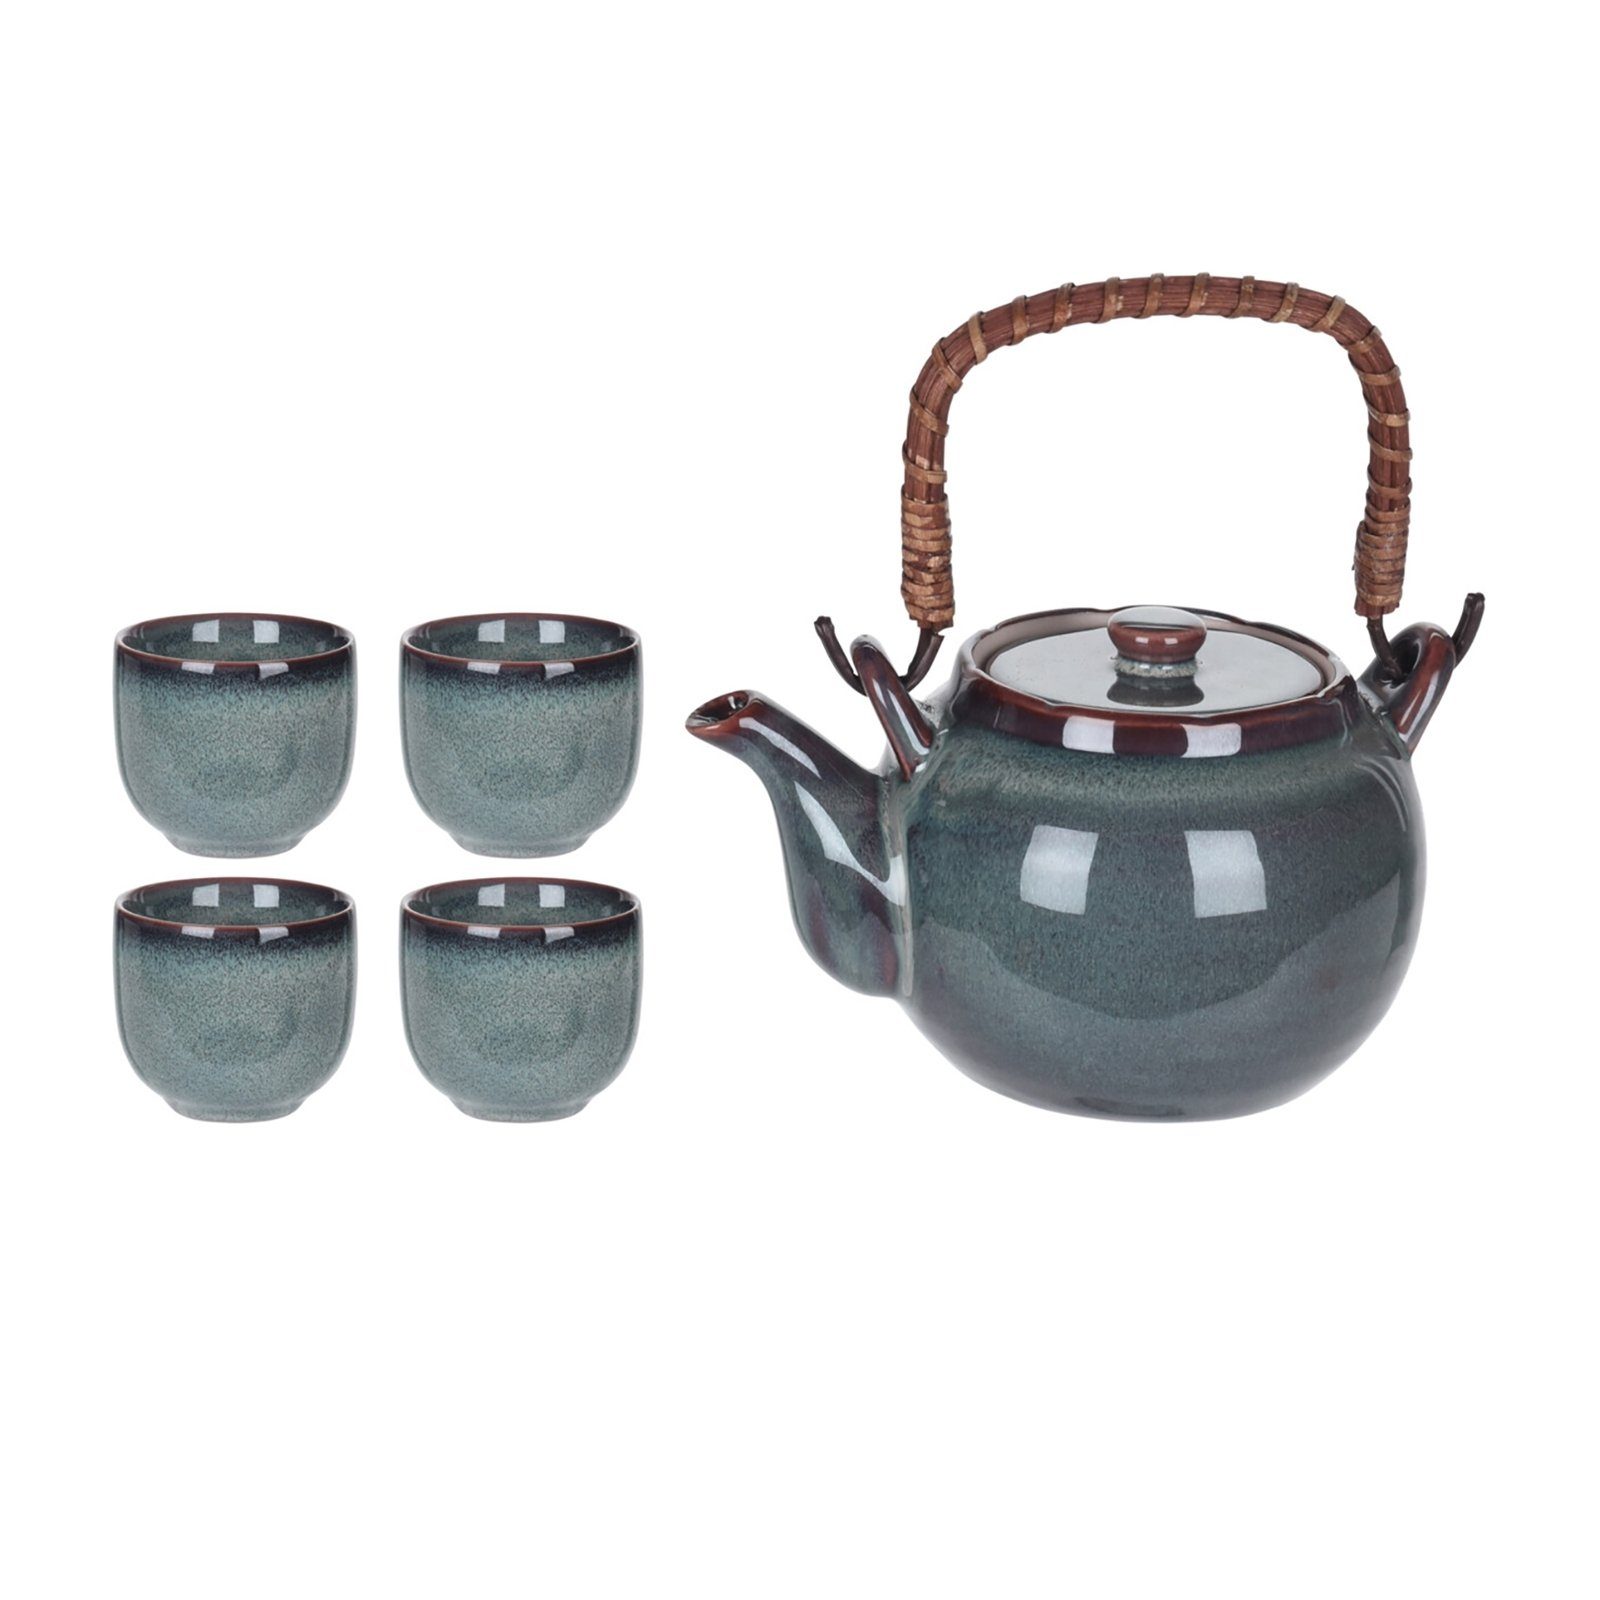 Neuetischkultur Teekanne Teekanne mit 4 Becher Keramik